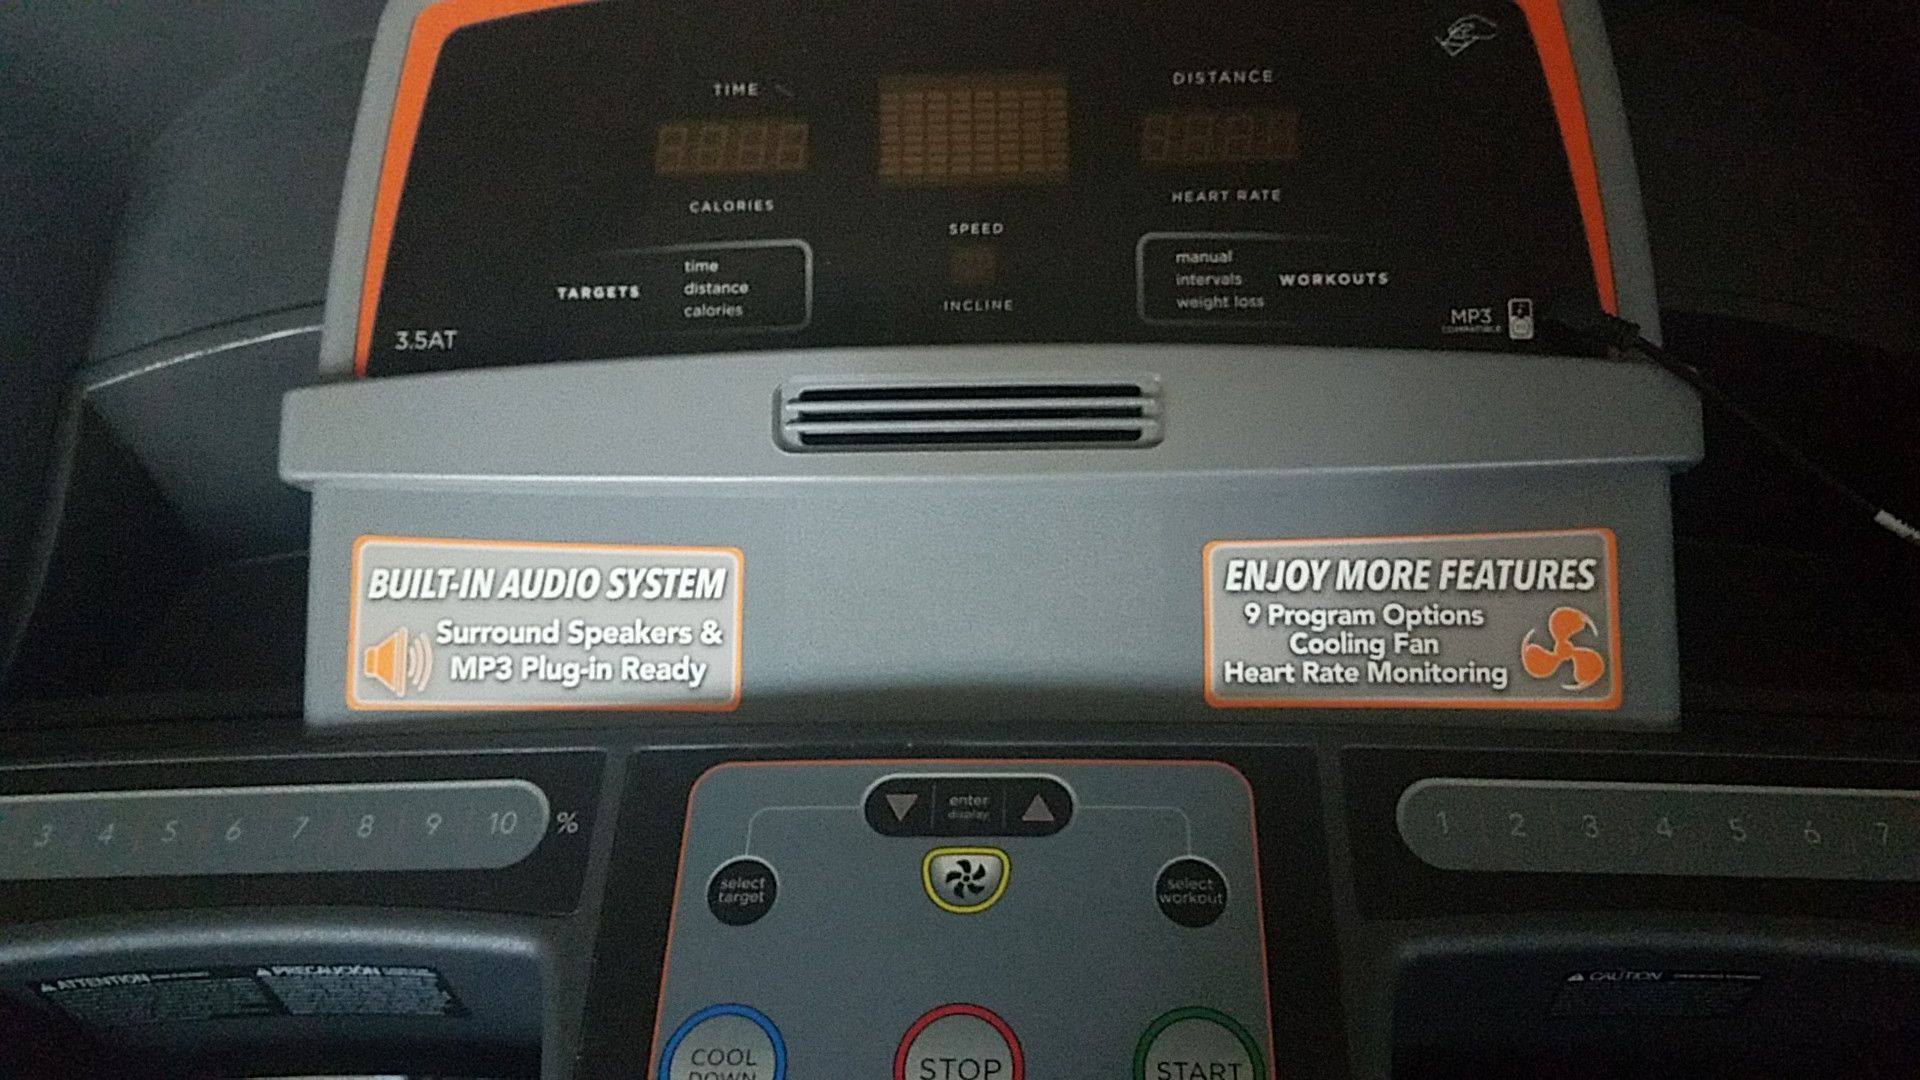 AFG SPORT treadmill